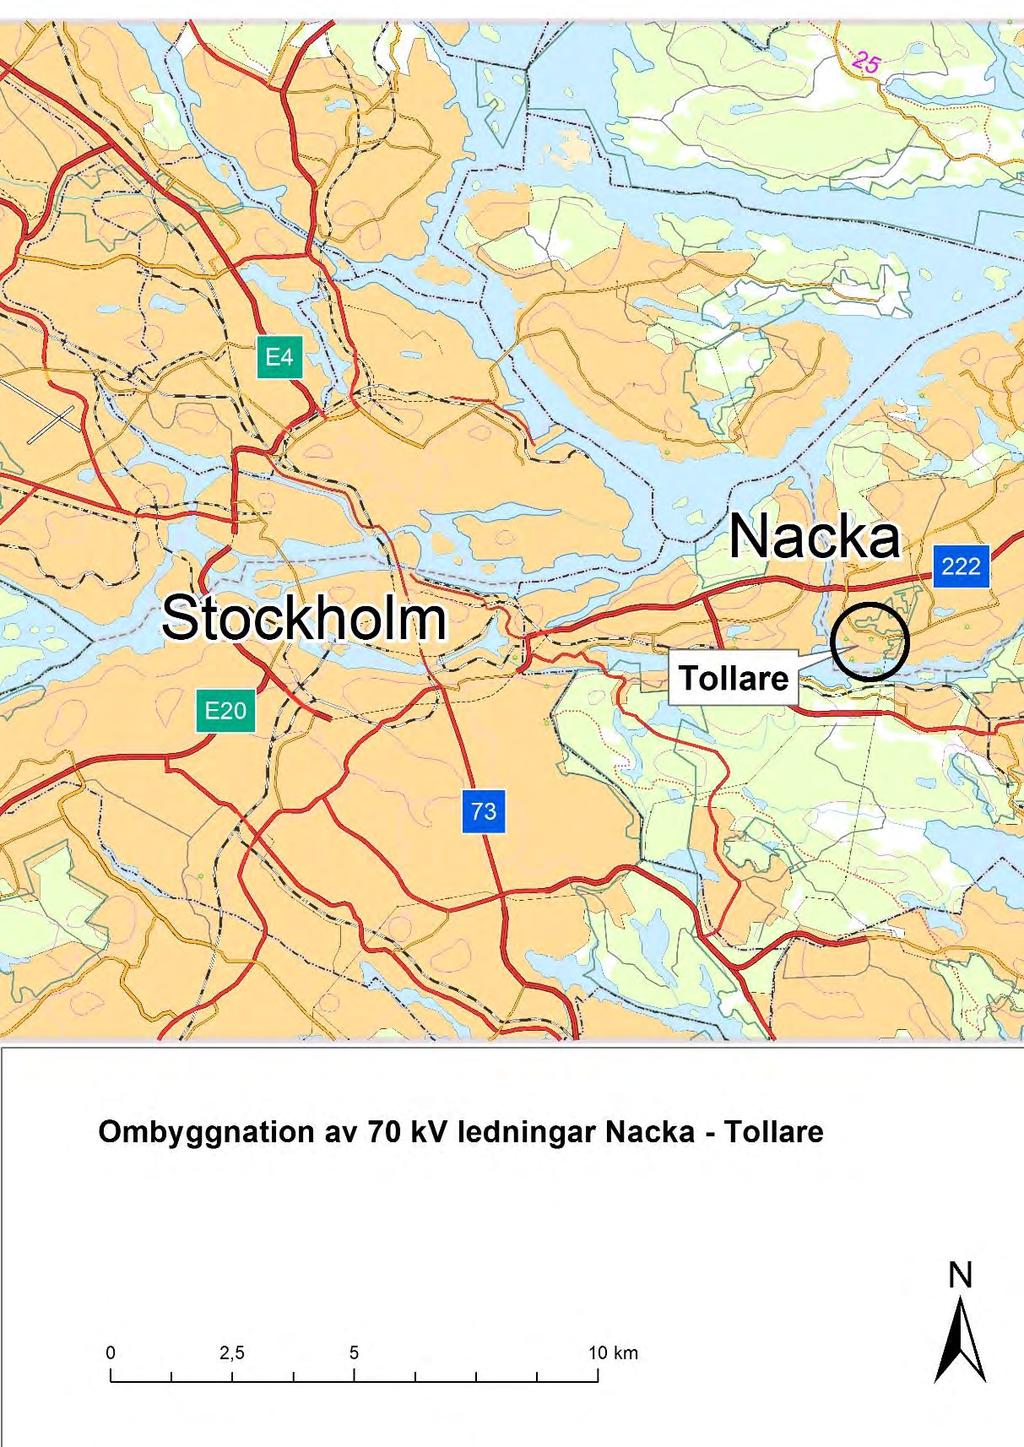 Figur 1. Karta över delar av Stockholm.